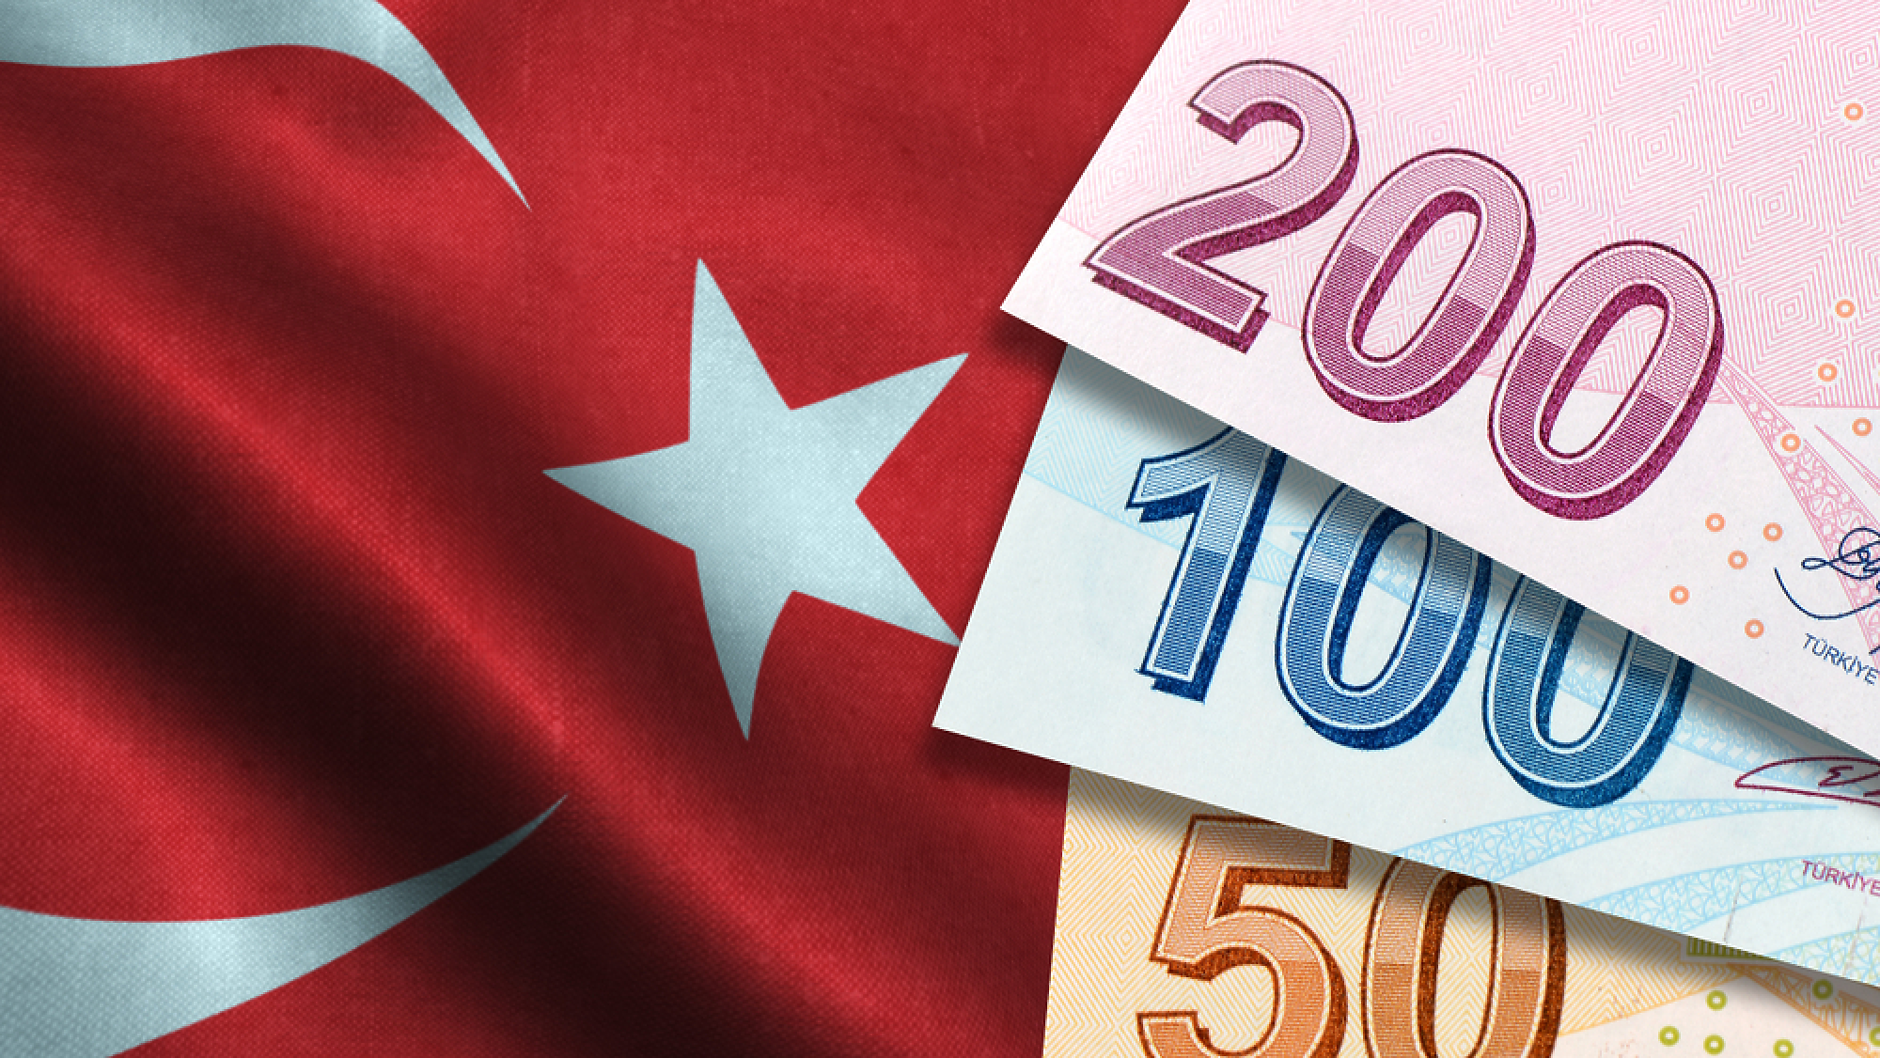 Турската лира се срина рекордно спрямо долара в очакване на втория тур от президентските избори